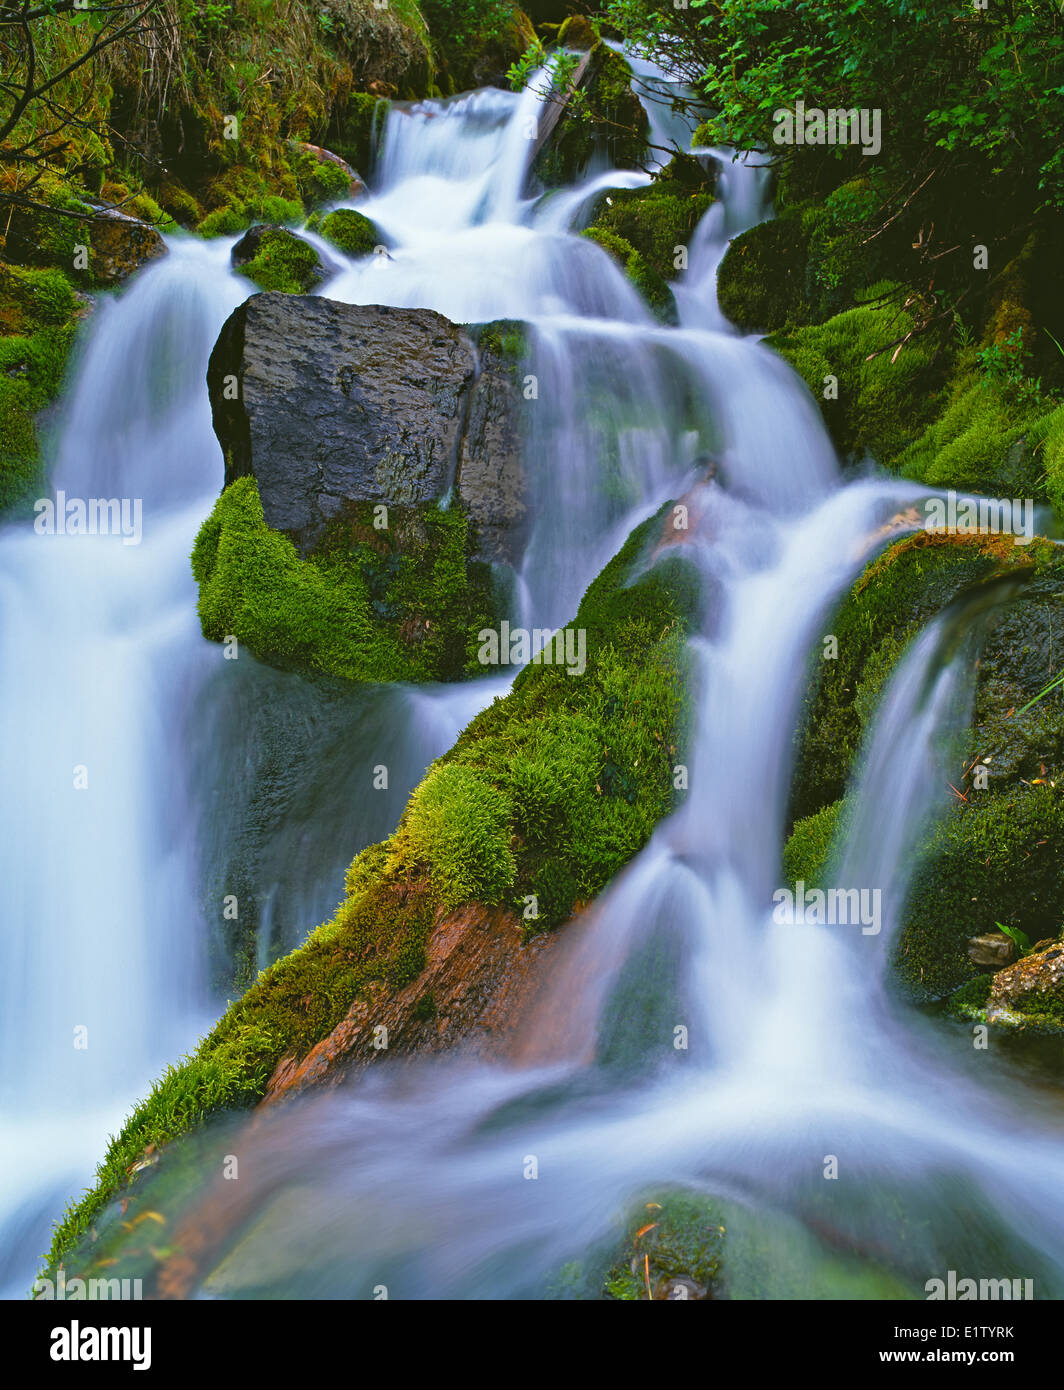 Cascada fluyendo a través de un bosque tropical en la isla de Vancouver, British Columbia, Canadá Foto de stock